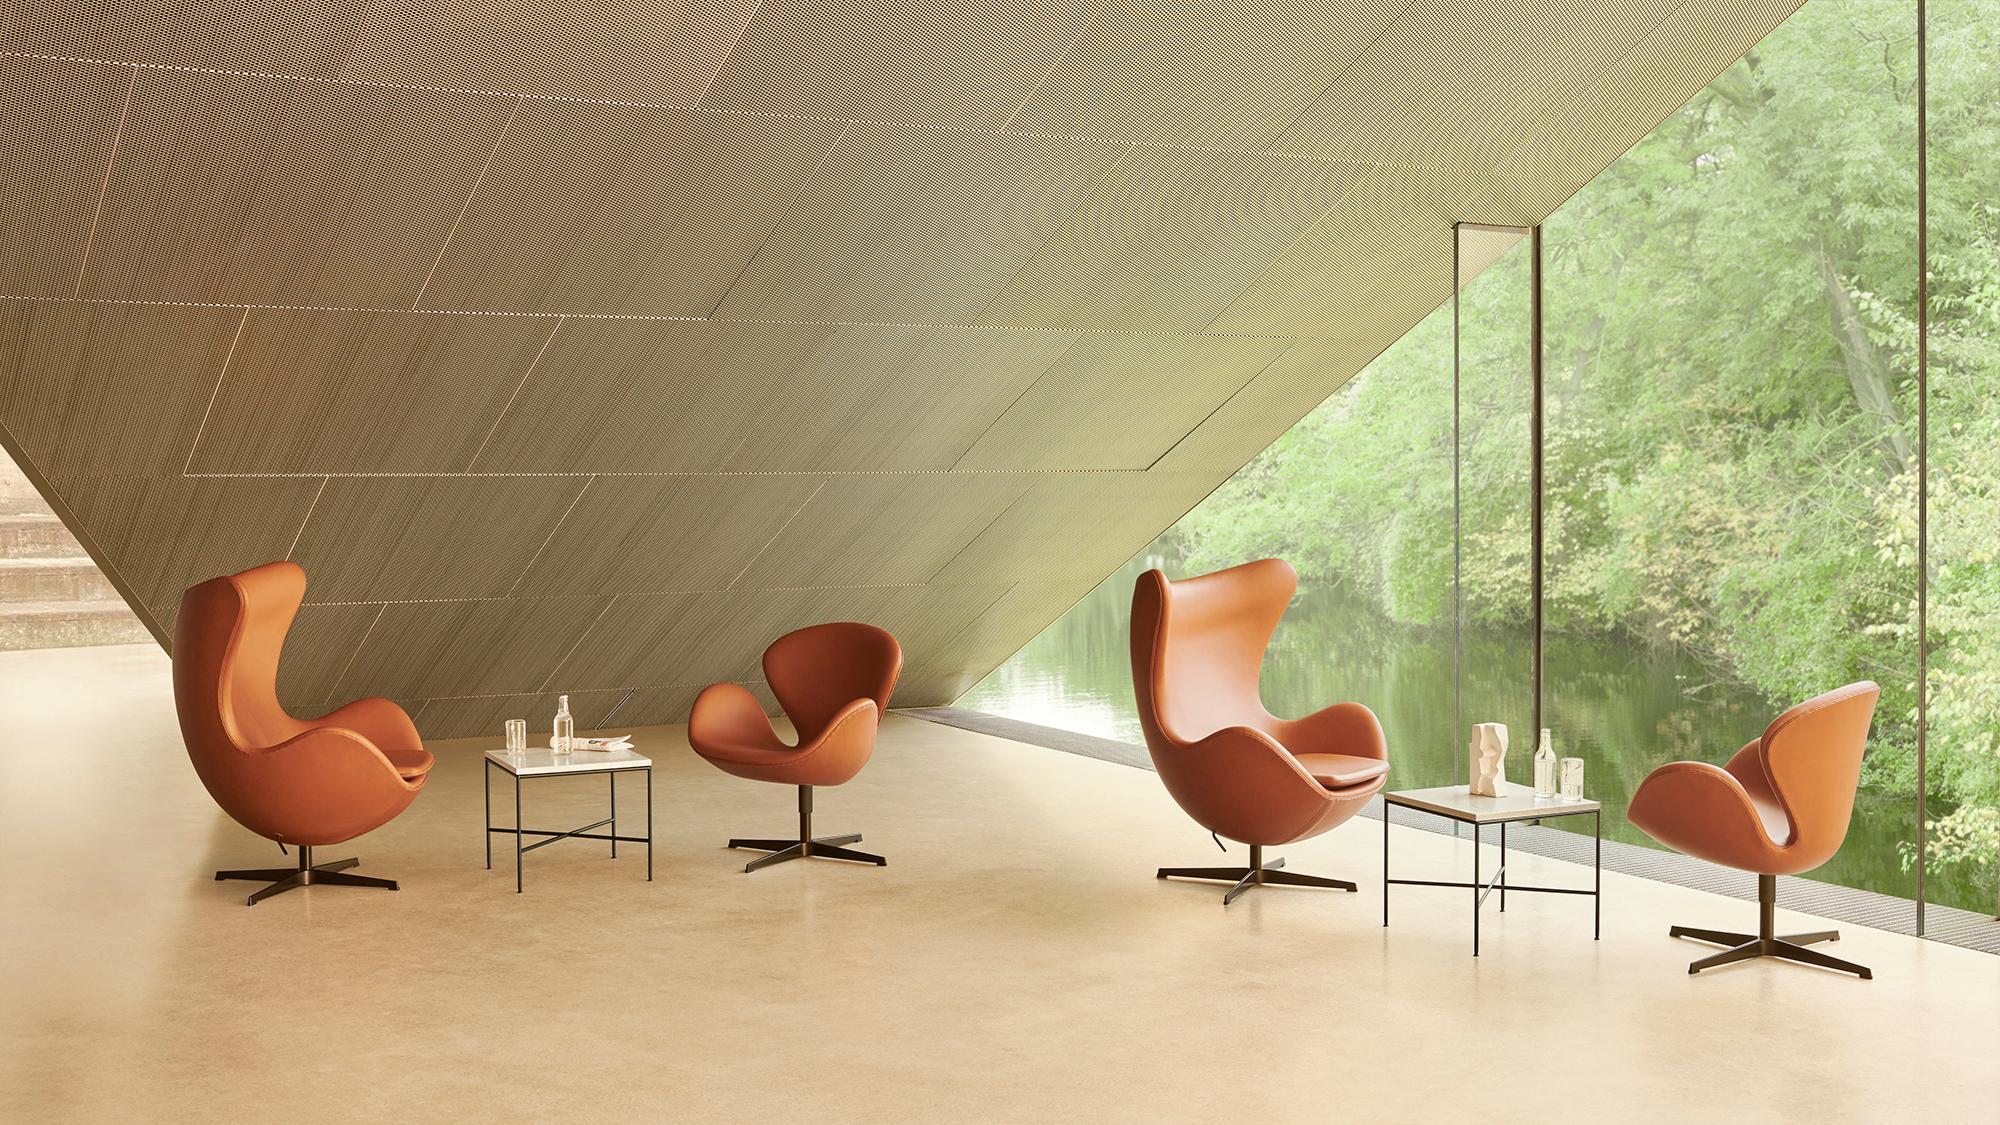 Arne Jacobsen 'Schwan' Stuhl für Fritz Hansen in Lederpolsterung (Kat. 3).

Fritz Hansen wurde 1872 gegründet und ist zum Synonym für legendäres dänisches Design geworden. Die Marke kombiniert zeitlose Handwerkskunst mit einem Schwerpunkt auf